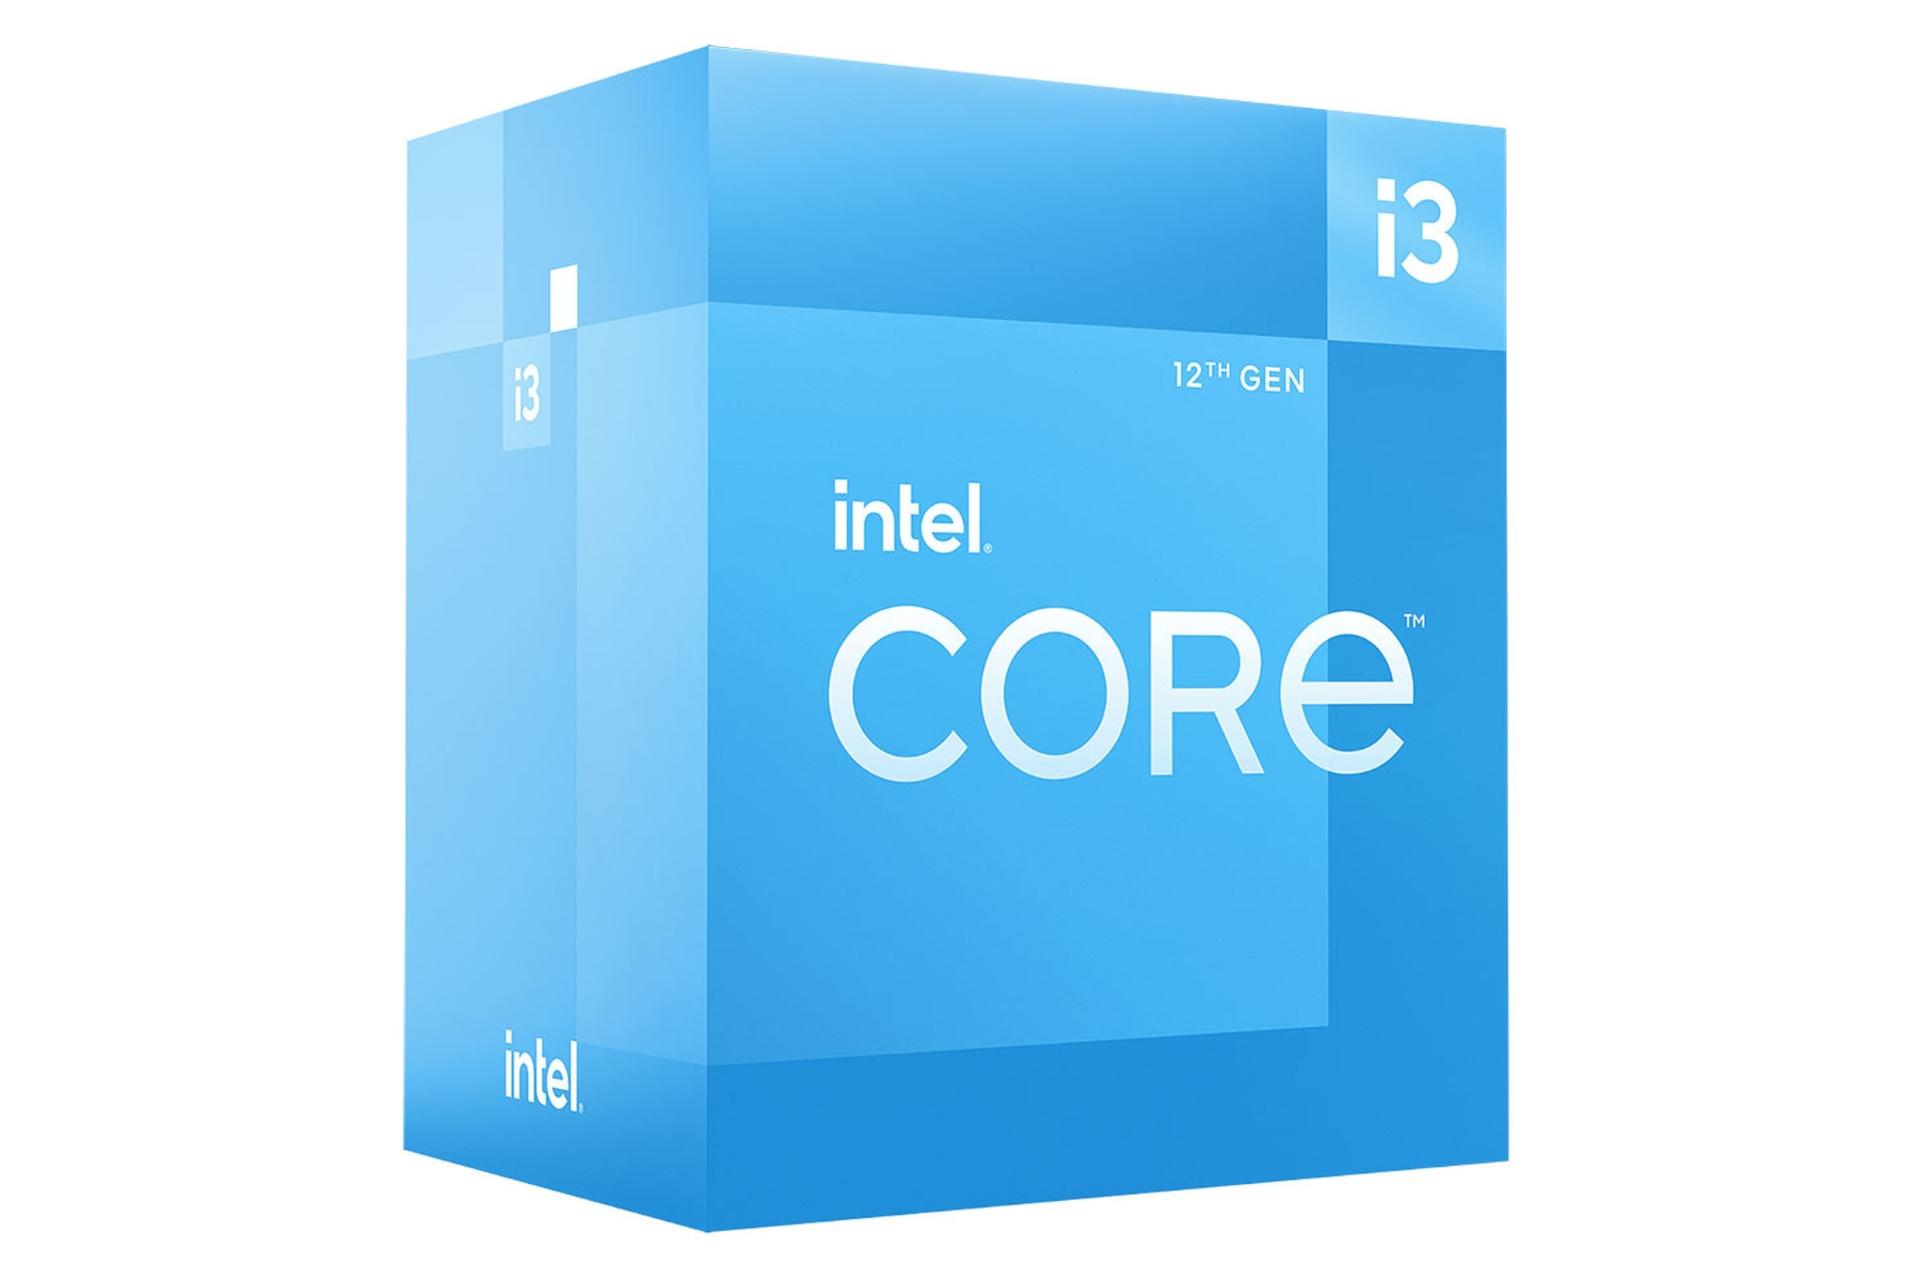 نمای چپ جعبه پردازنده اینتل Core i3 نسل دوازدهم / Intel Core i3 12th Gen